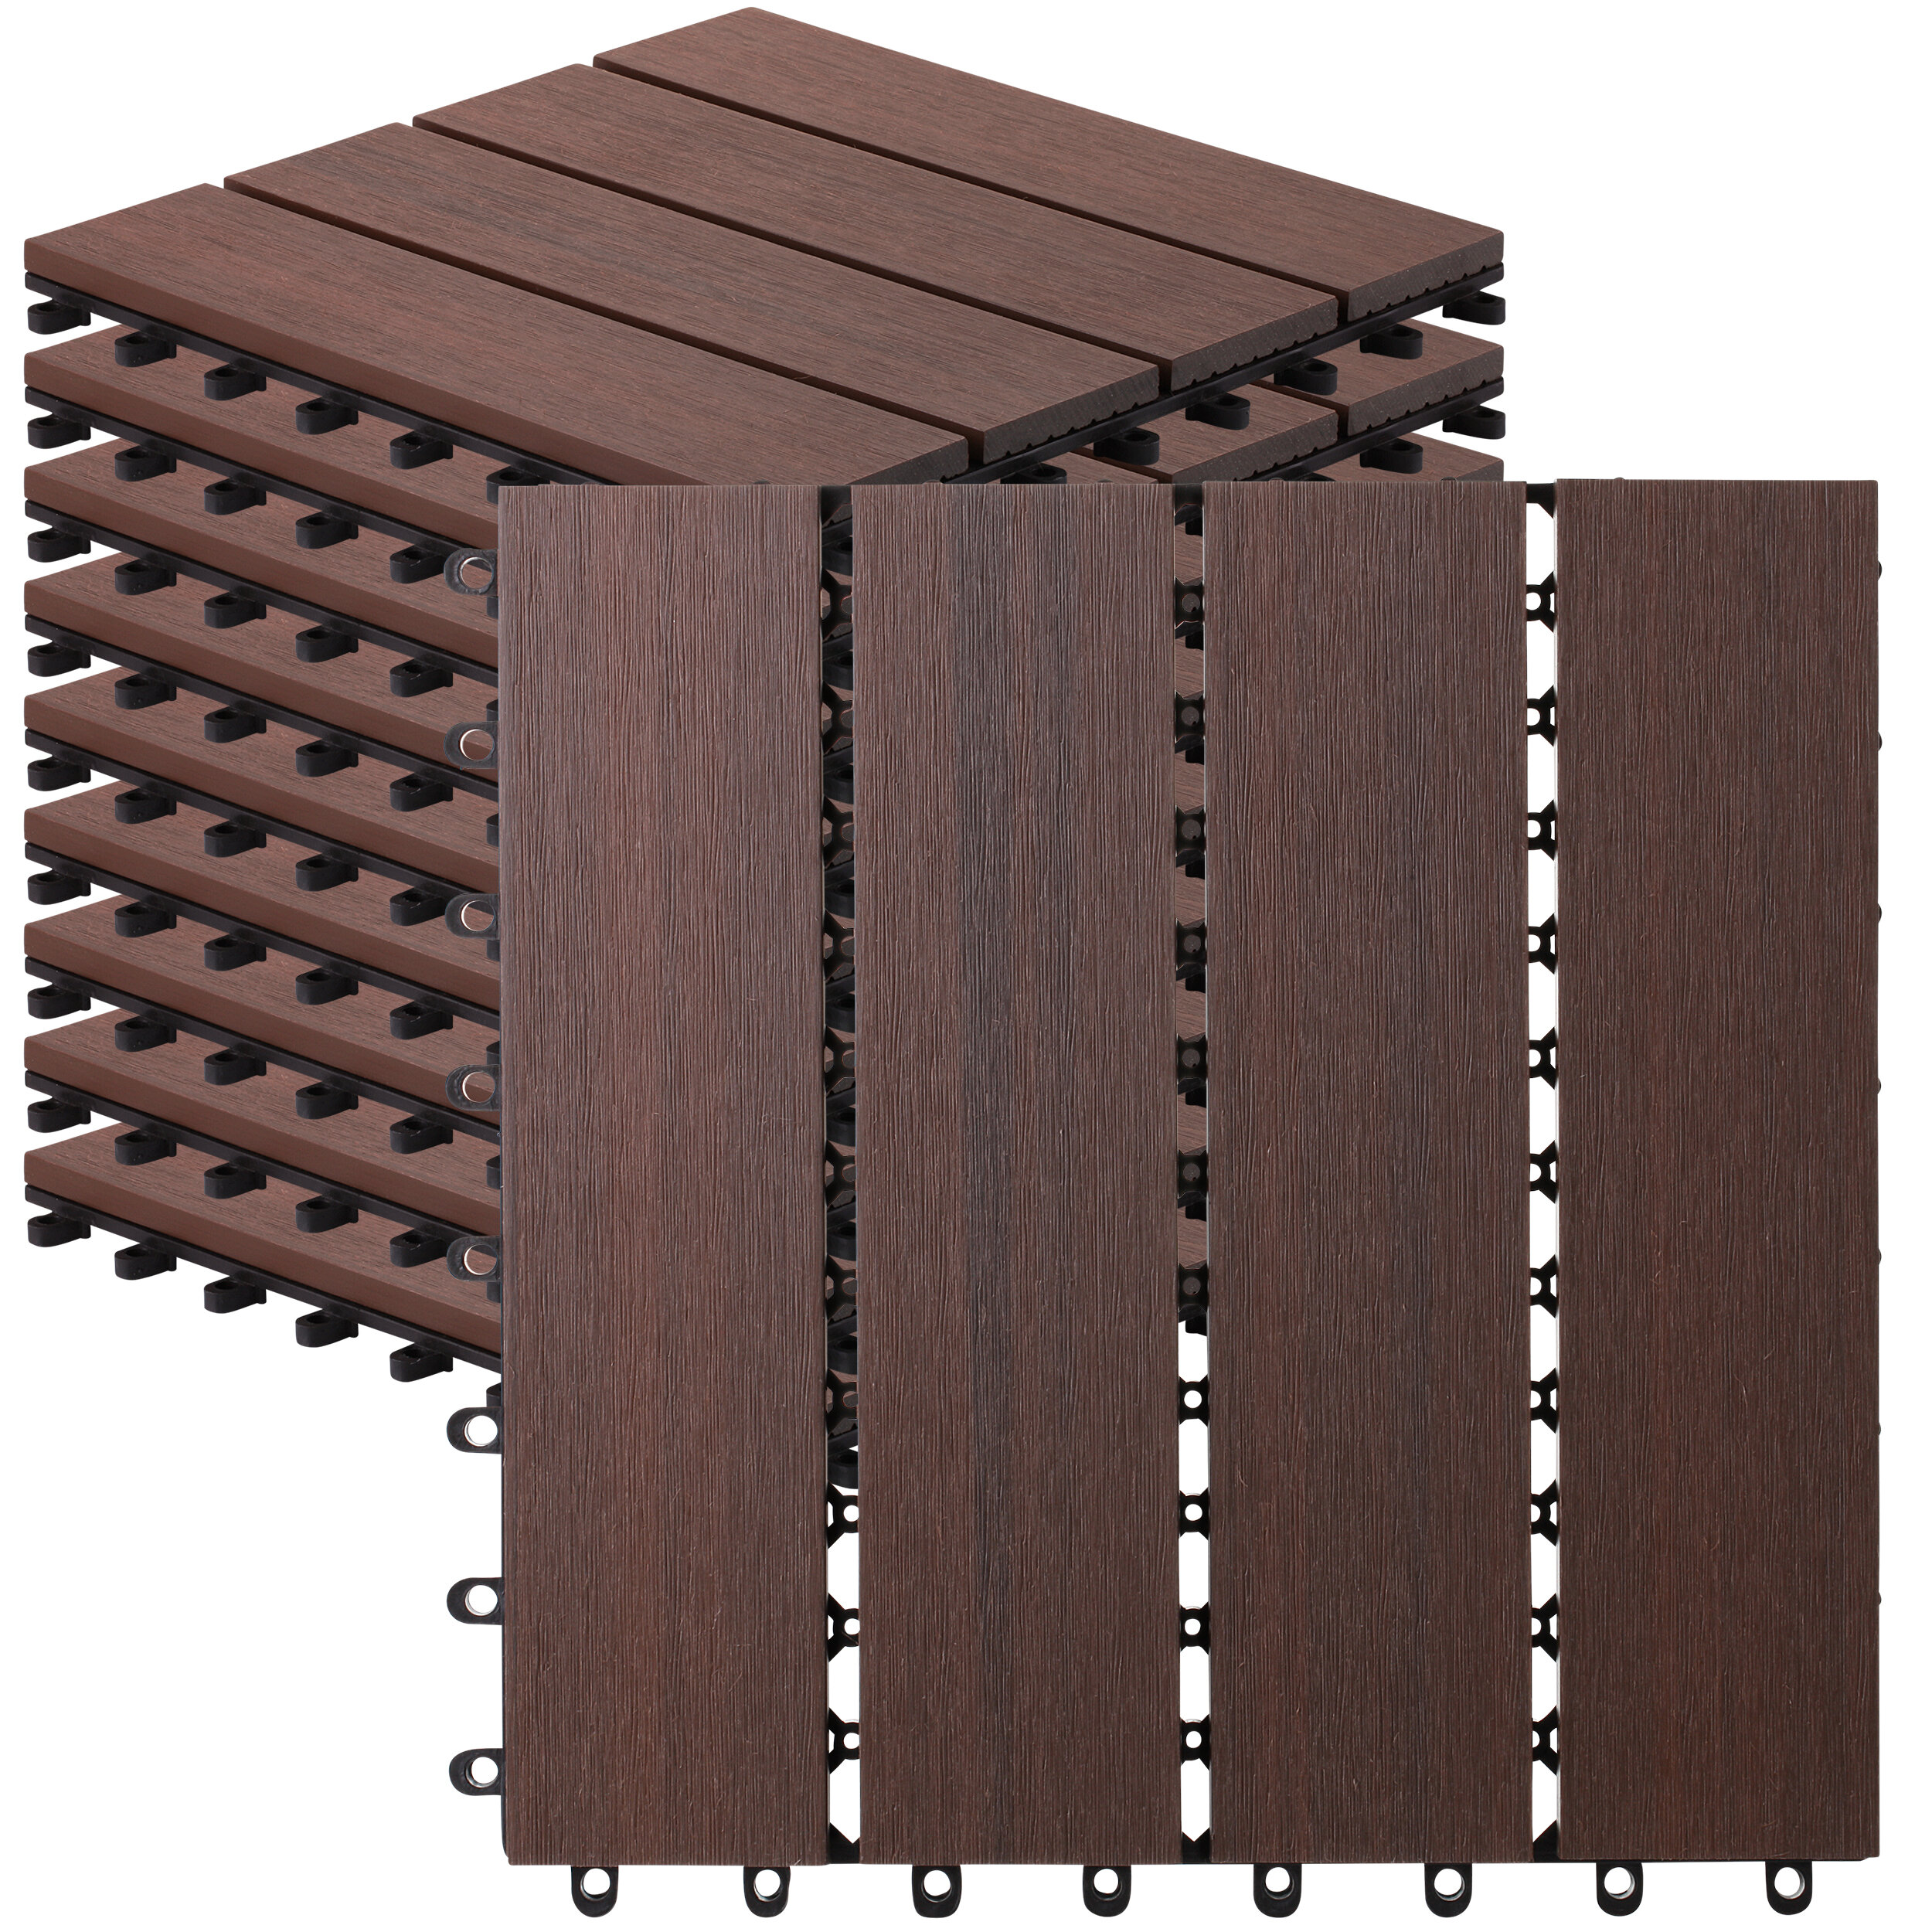 Wood Plastic Composite Patio Deck Tiles 